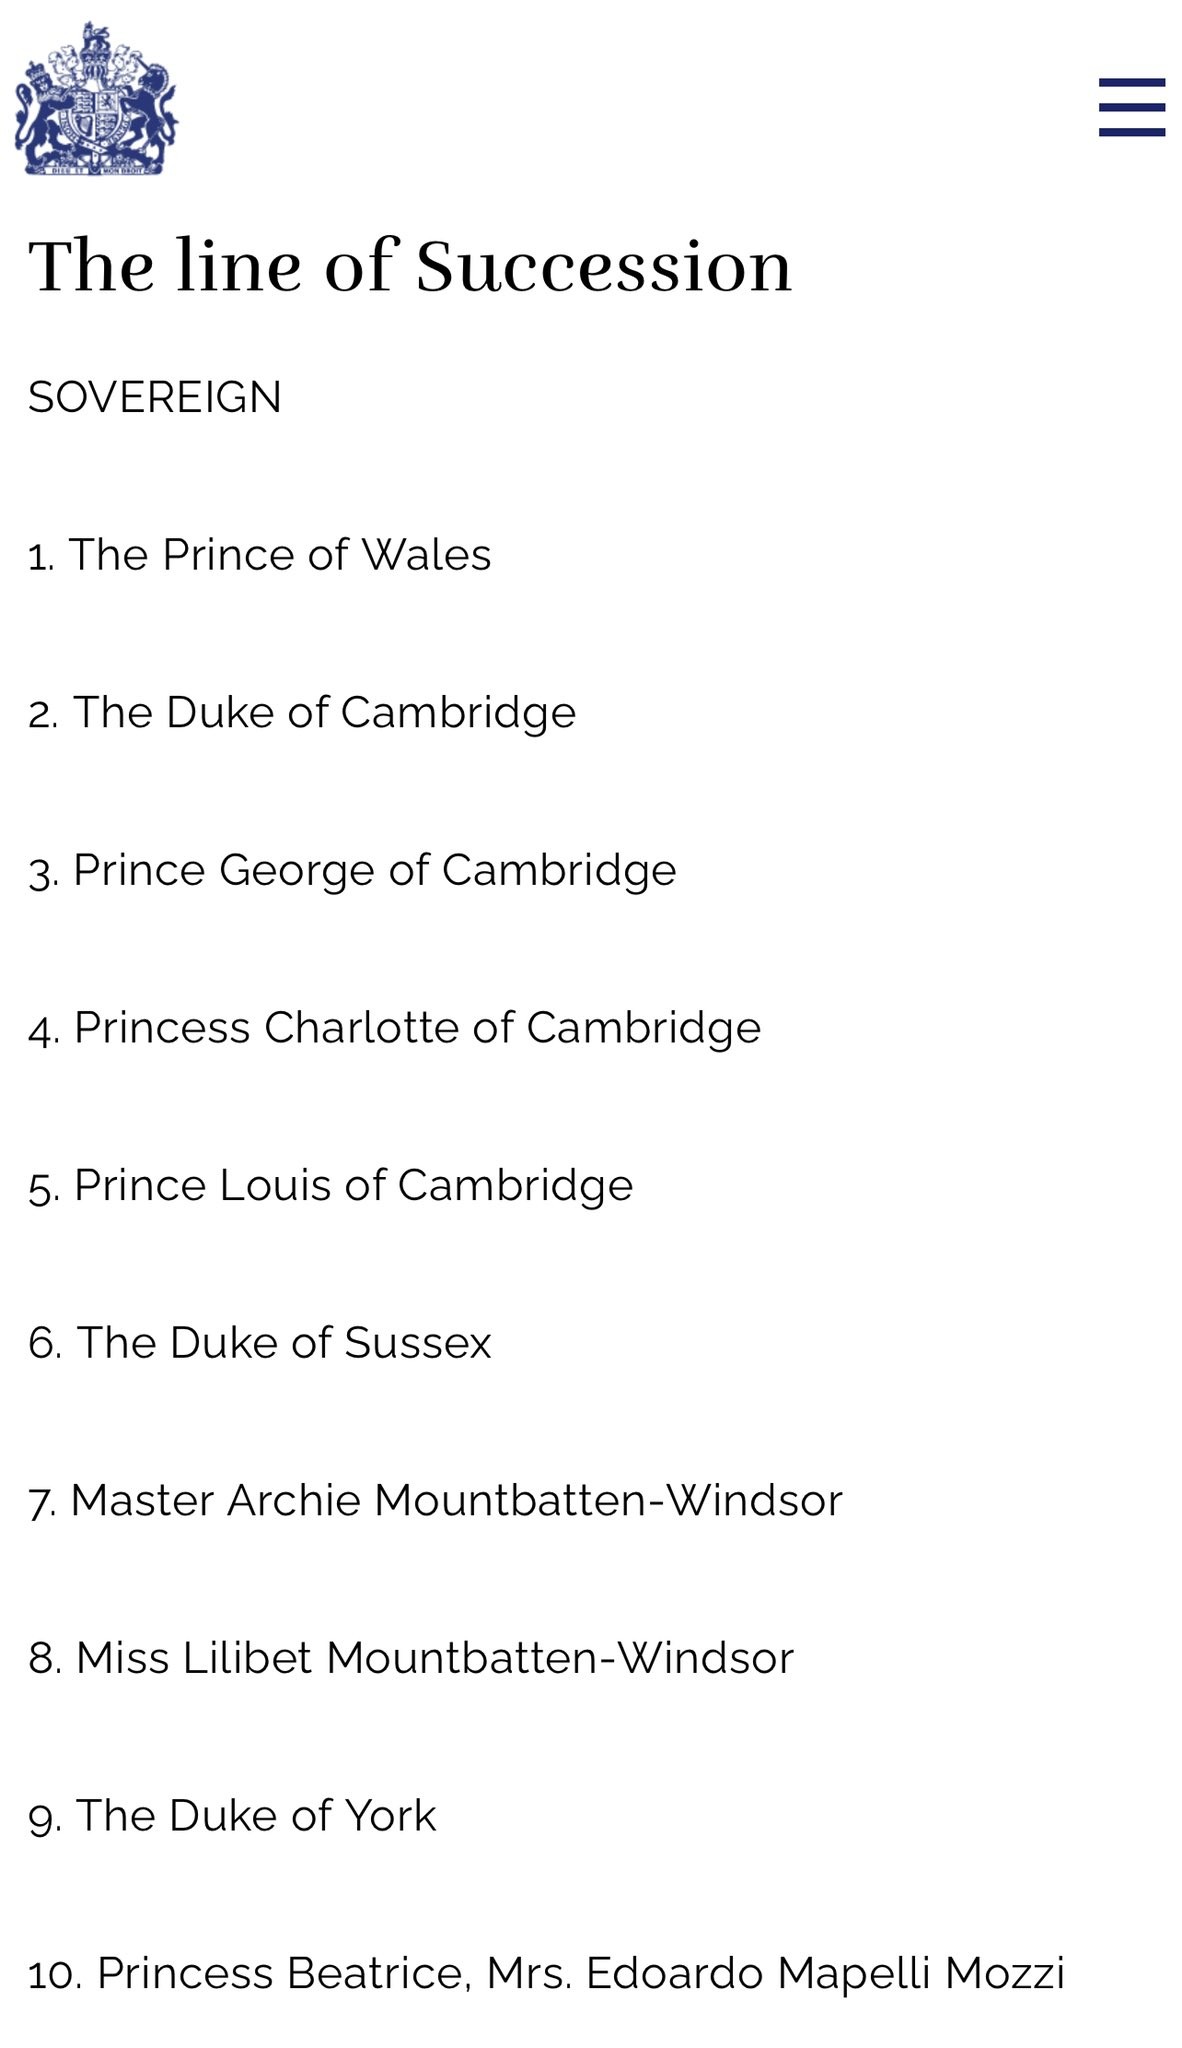 Linha de sucessão ao trono da família real britânica tem Lilibet na oitava posição (Foto: Reprodução)